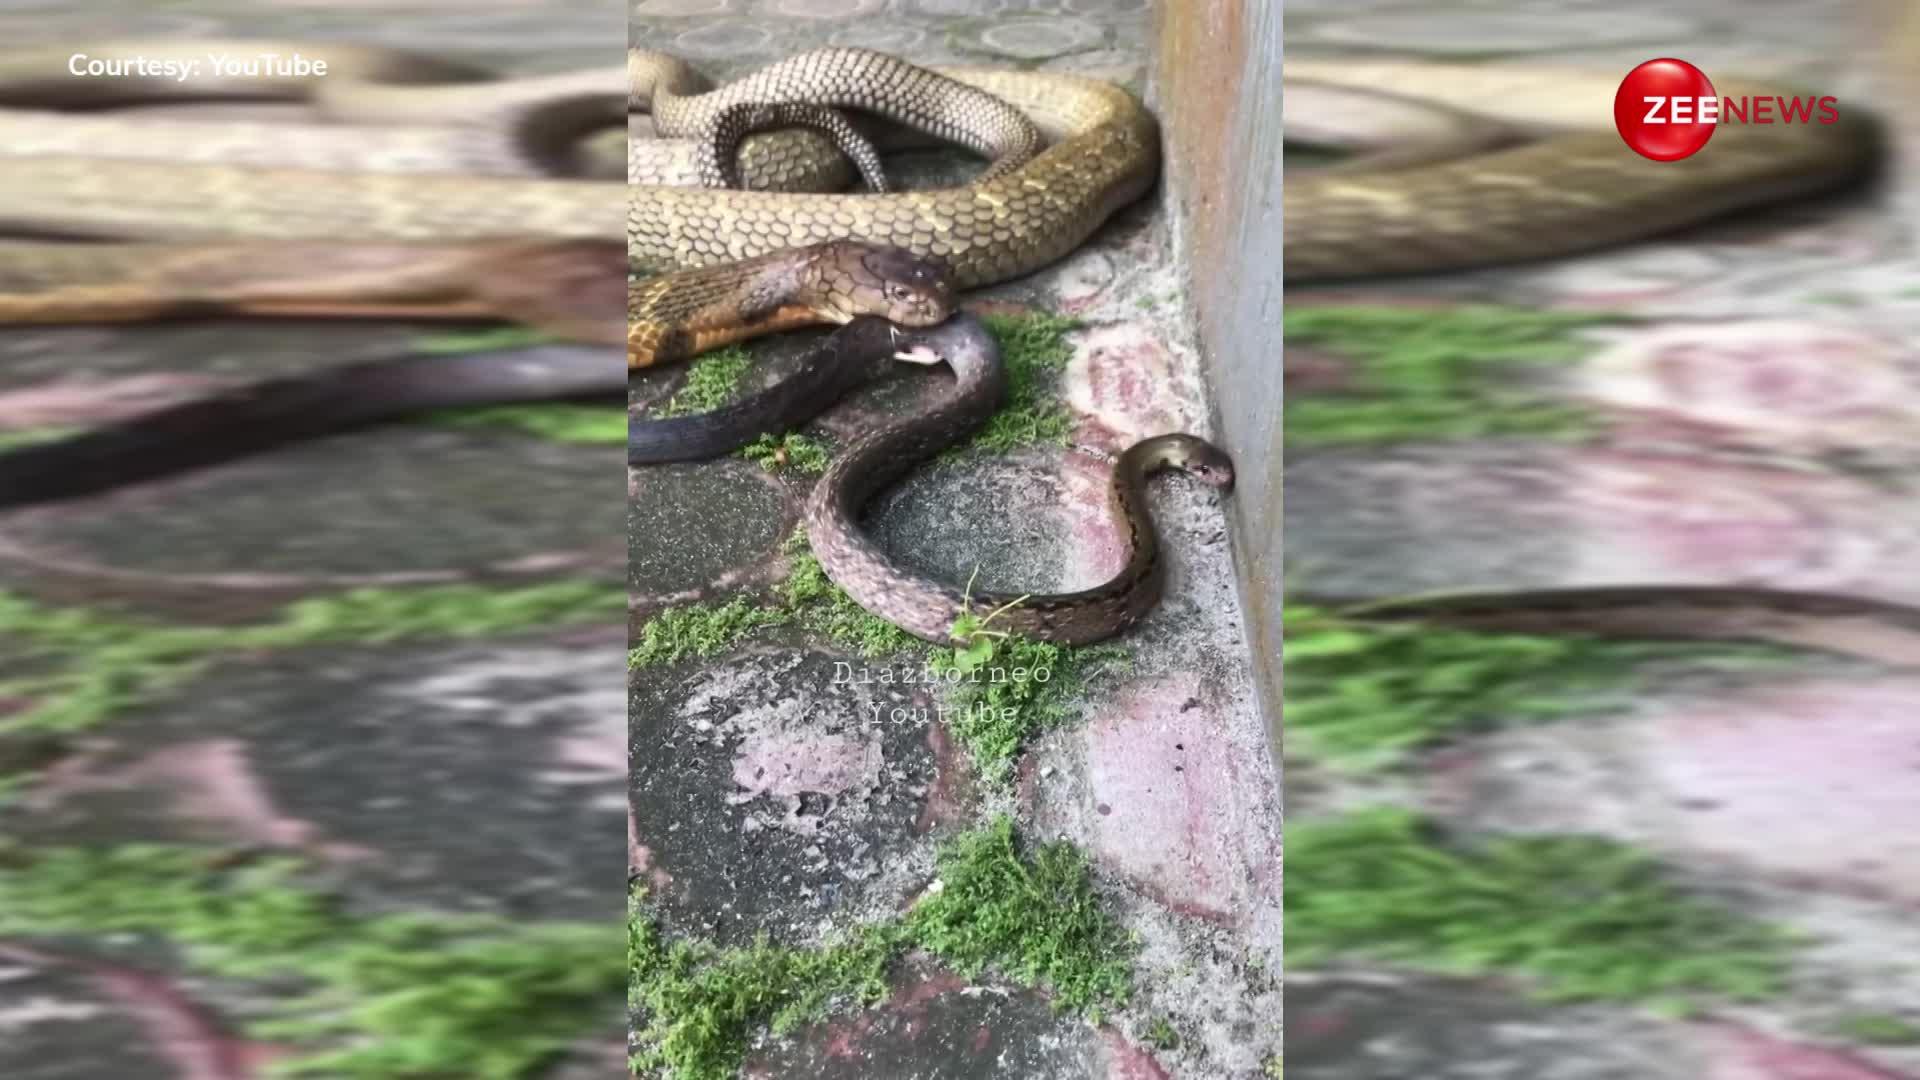 कुंडली मार कर बैठा था 20 फुट का किंग कोबरा, देखते ही देखते खा गया दूसरे जिंदा सांप को